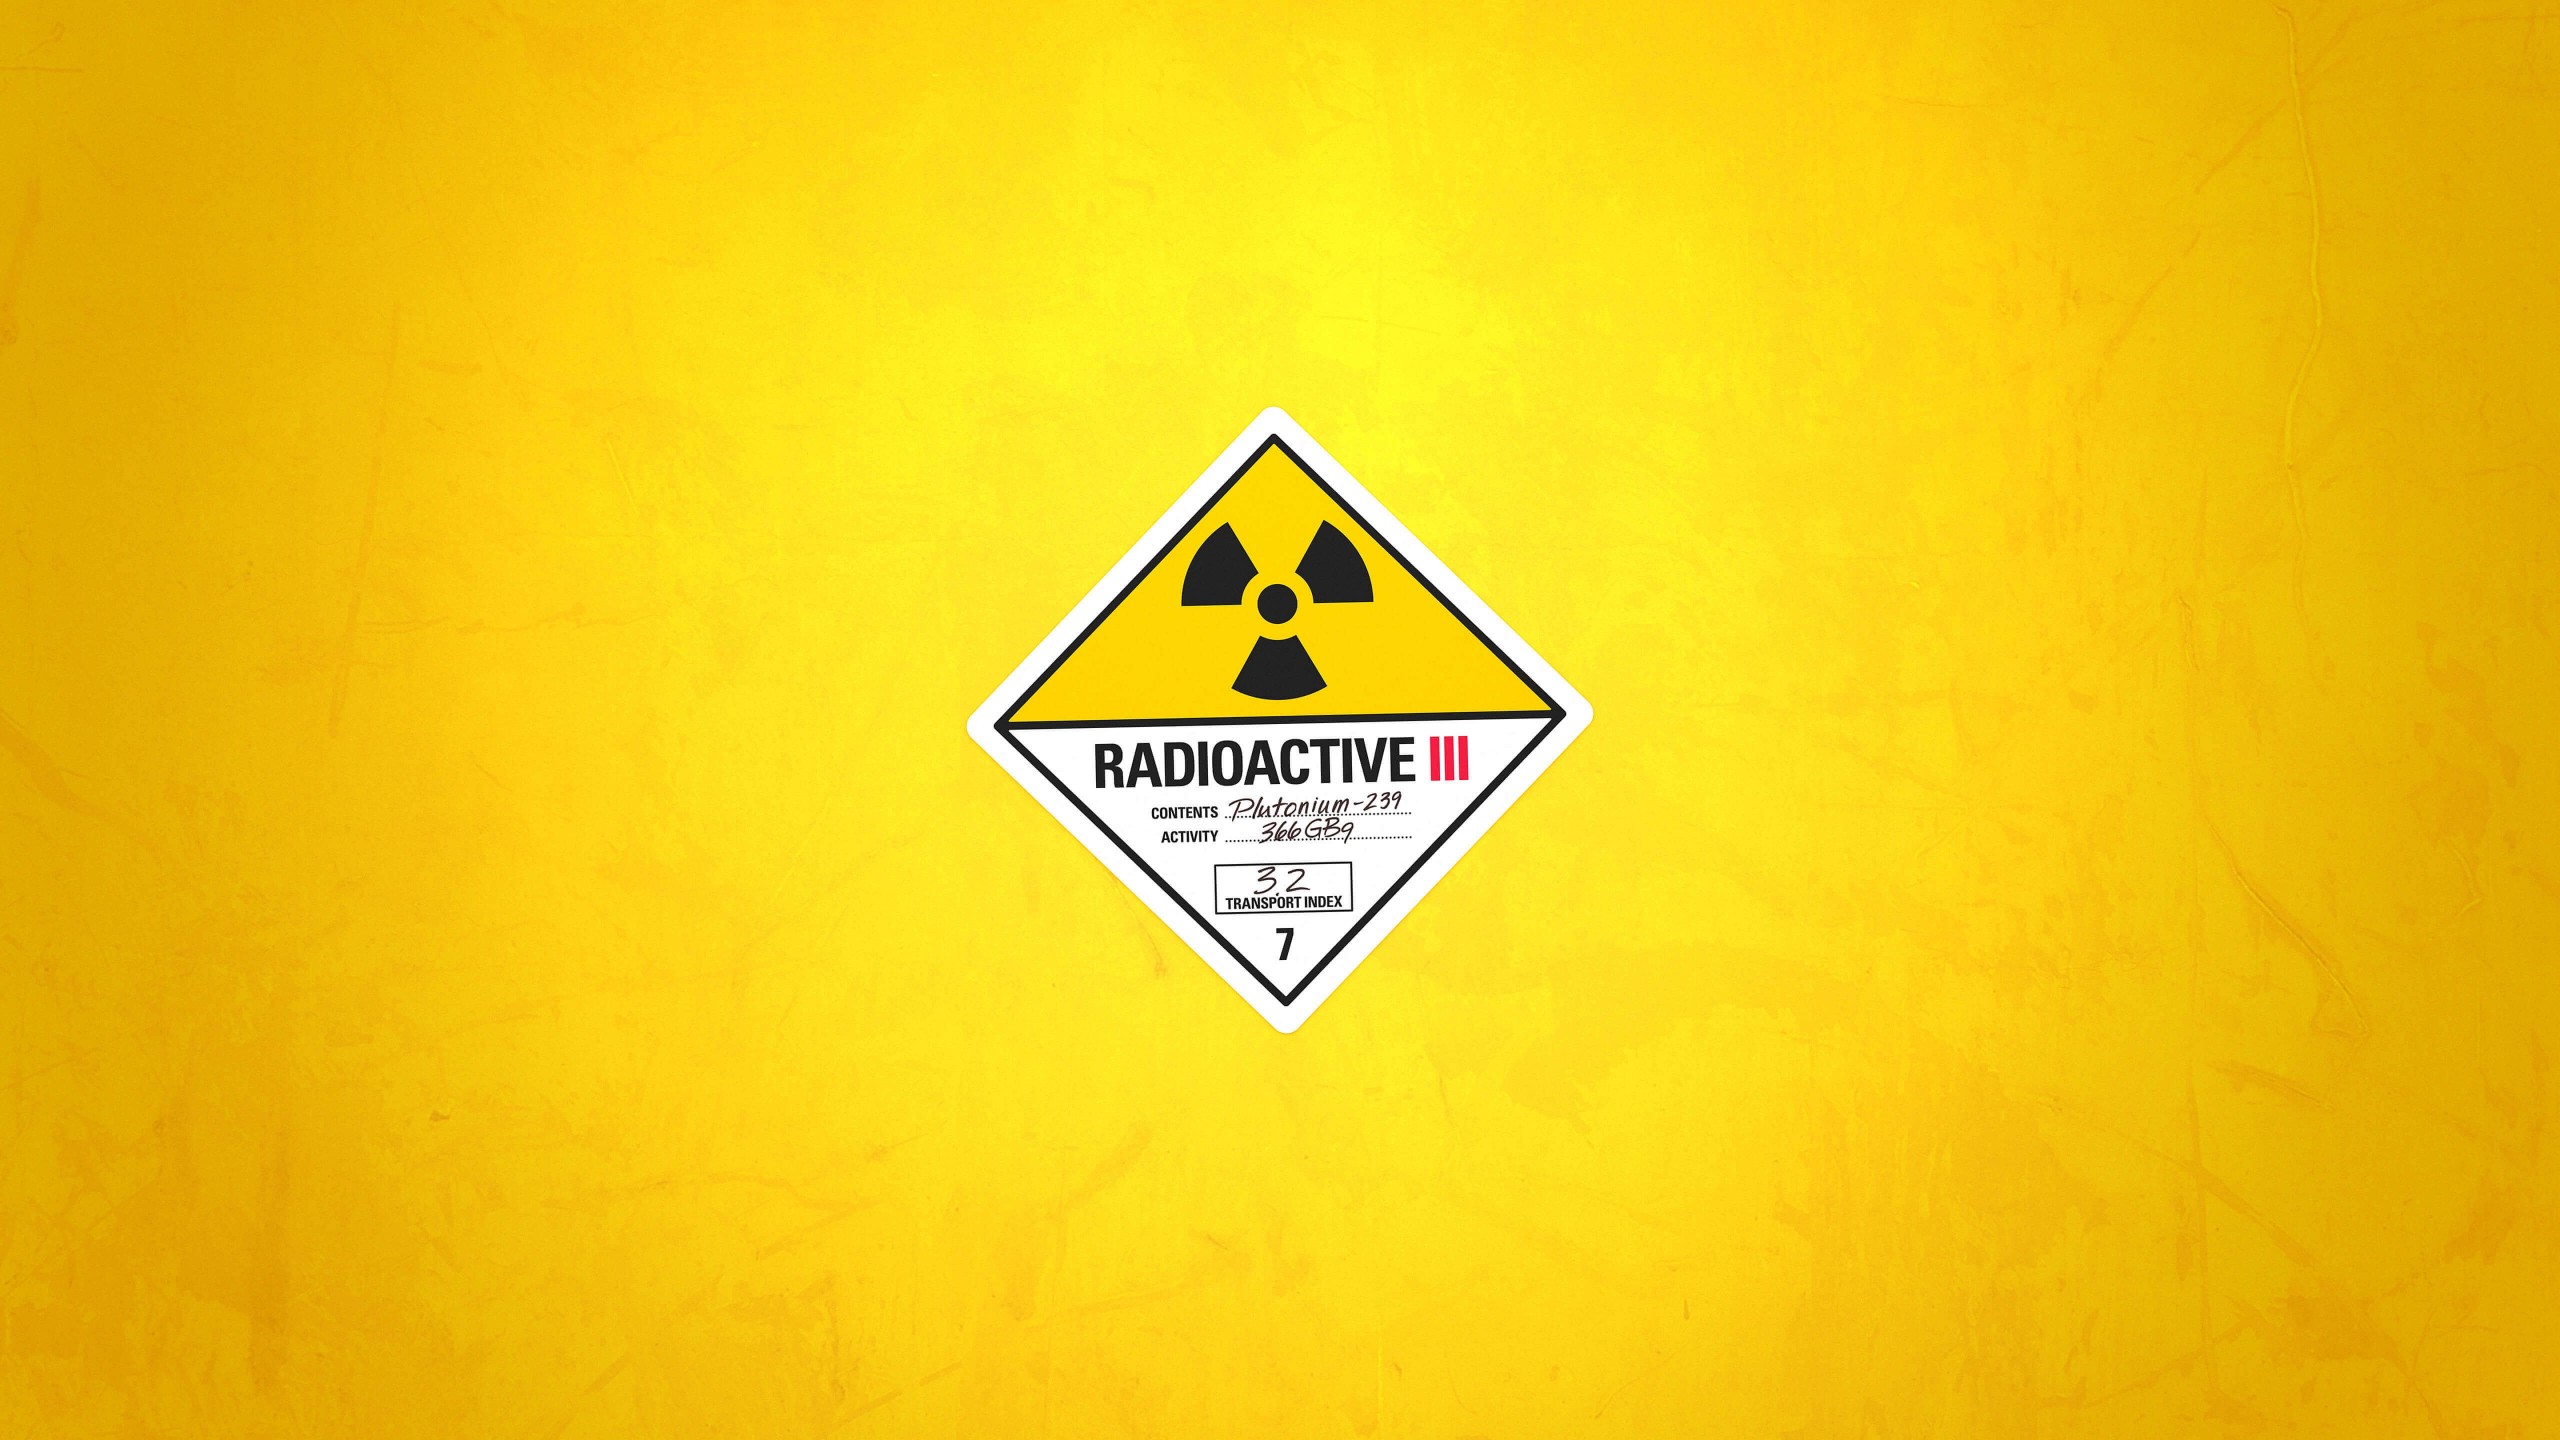 Radioactive Wallpaper for Desktop 2560x1440